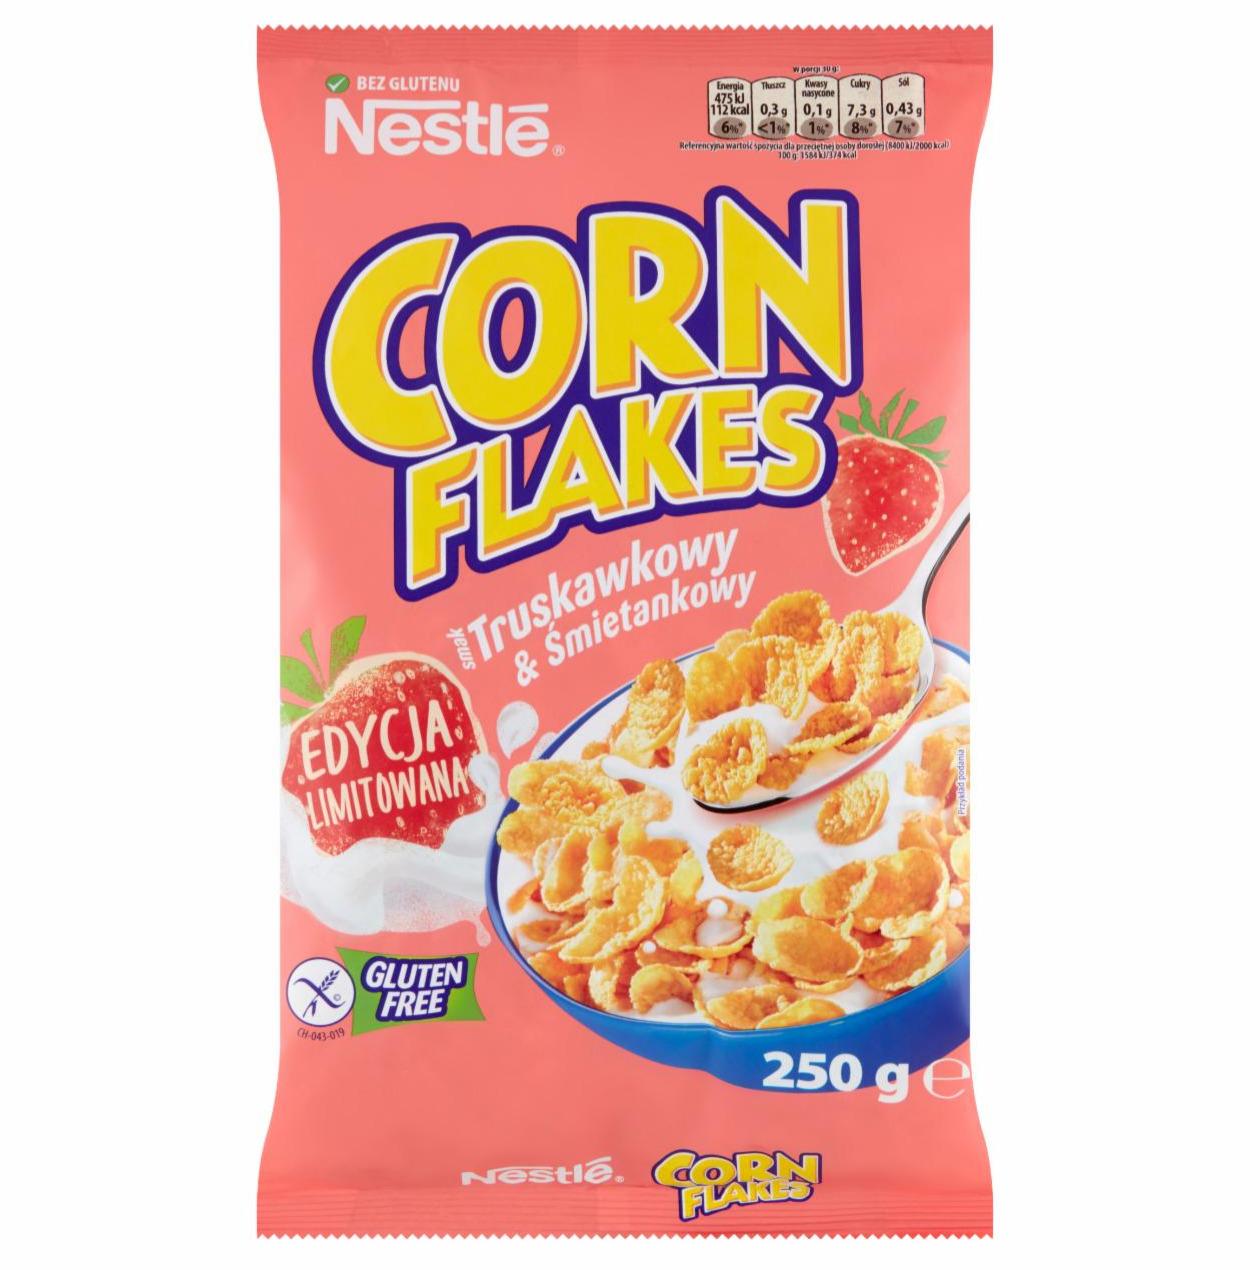 Zdjęcia - Nestlé Corn Flakes Płatki kukurydziane smak truskawkowy & śmietankowy 250 g